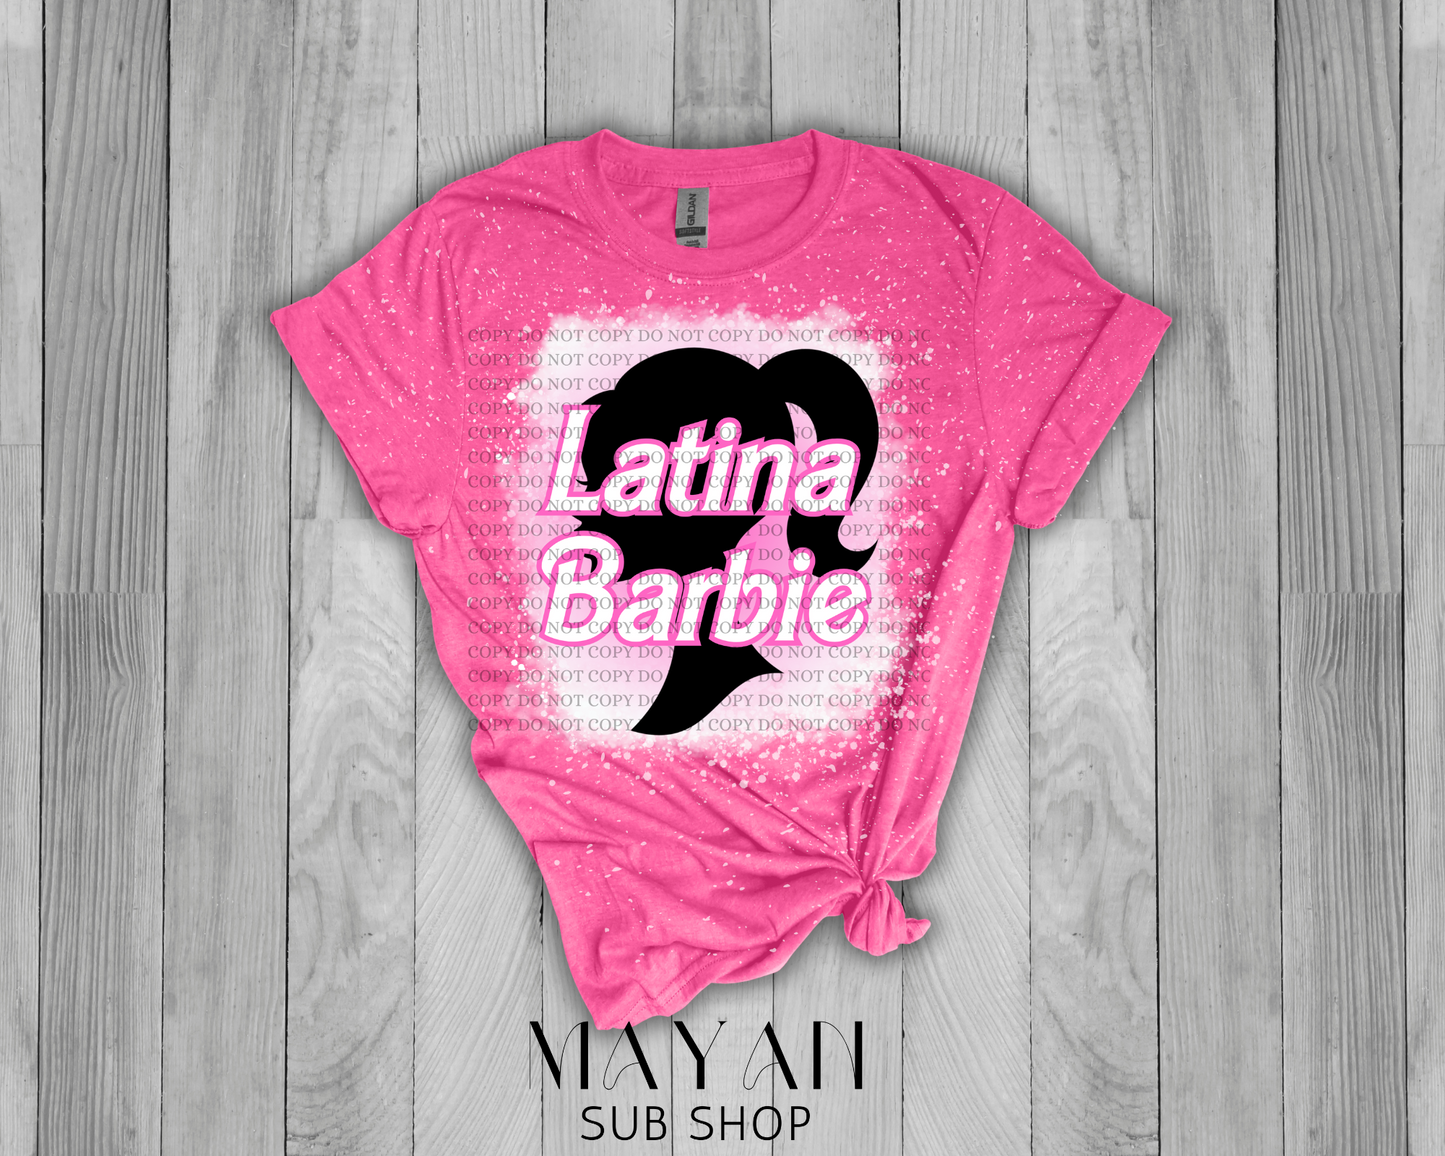 Latina Barb bleached shirt - Mayan Sub Shop